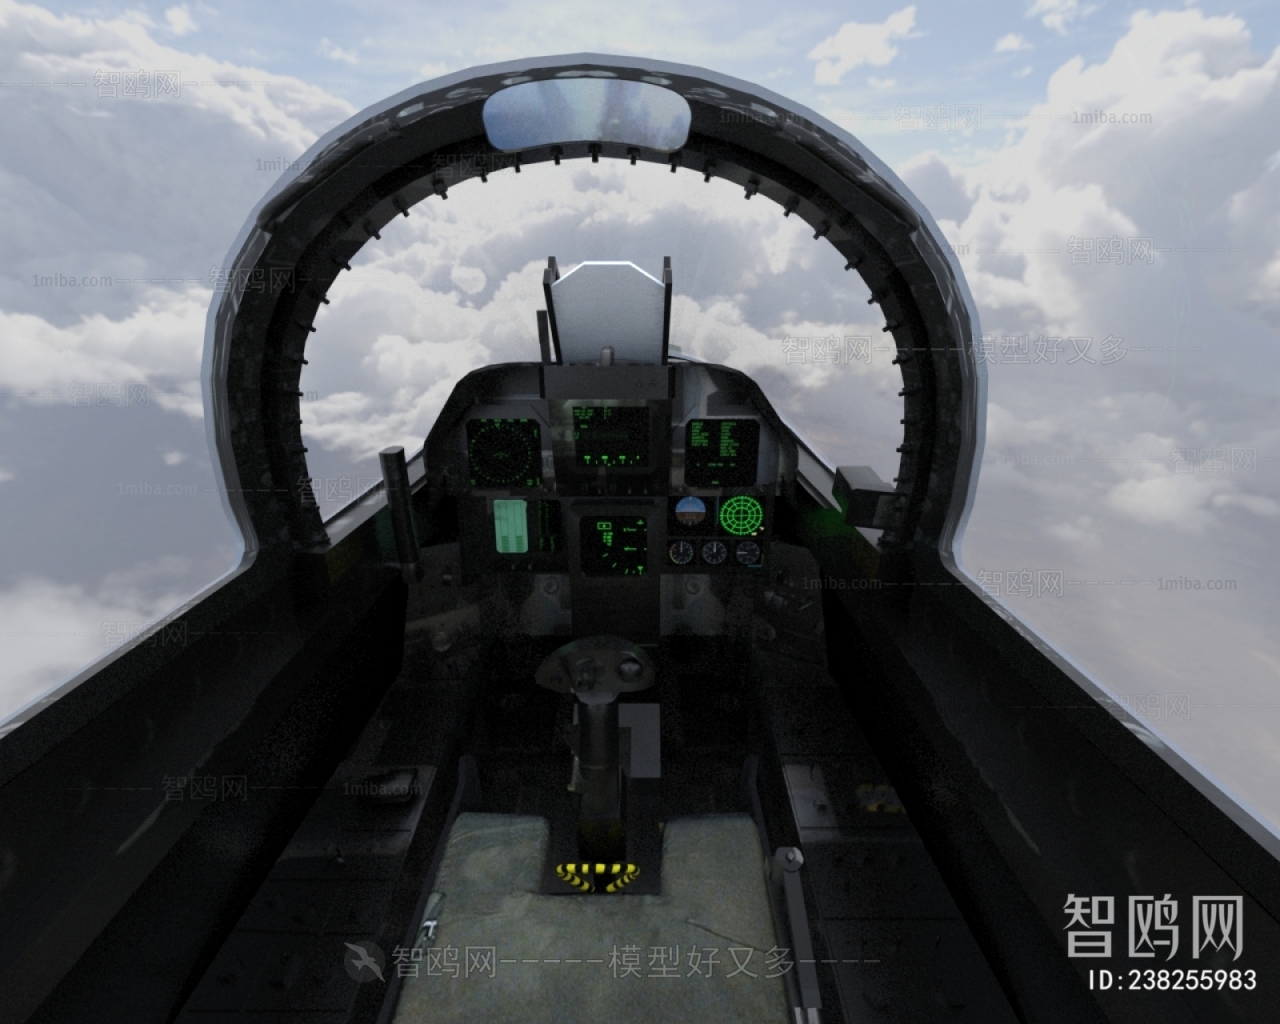 现代EA18G电子战机